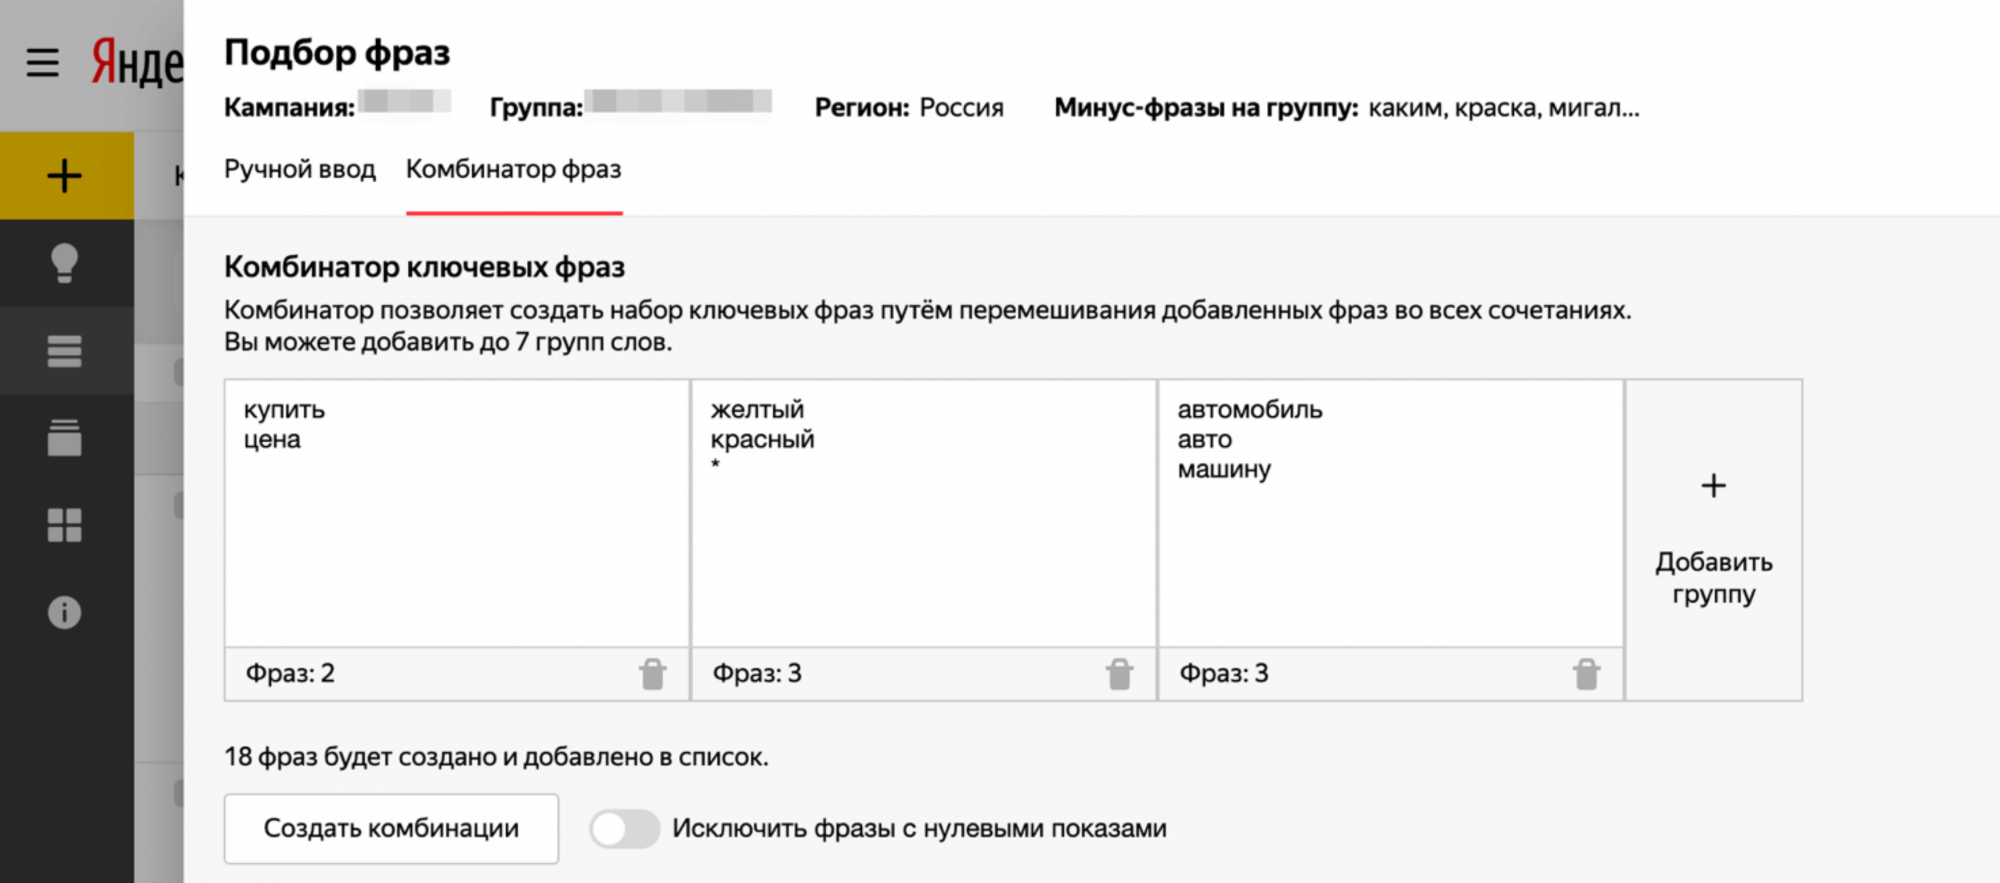 Яндекс.Директ представил новые возможности для работы с ключевиками